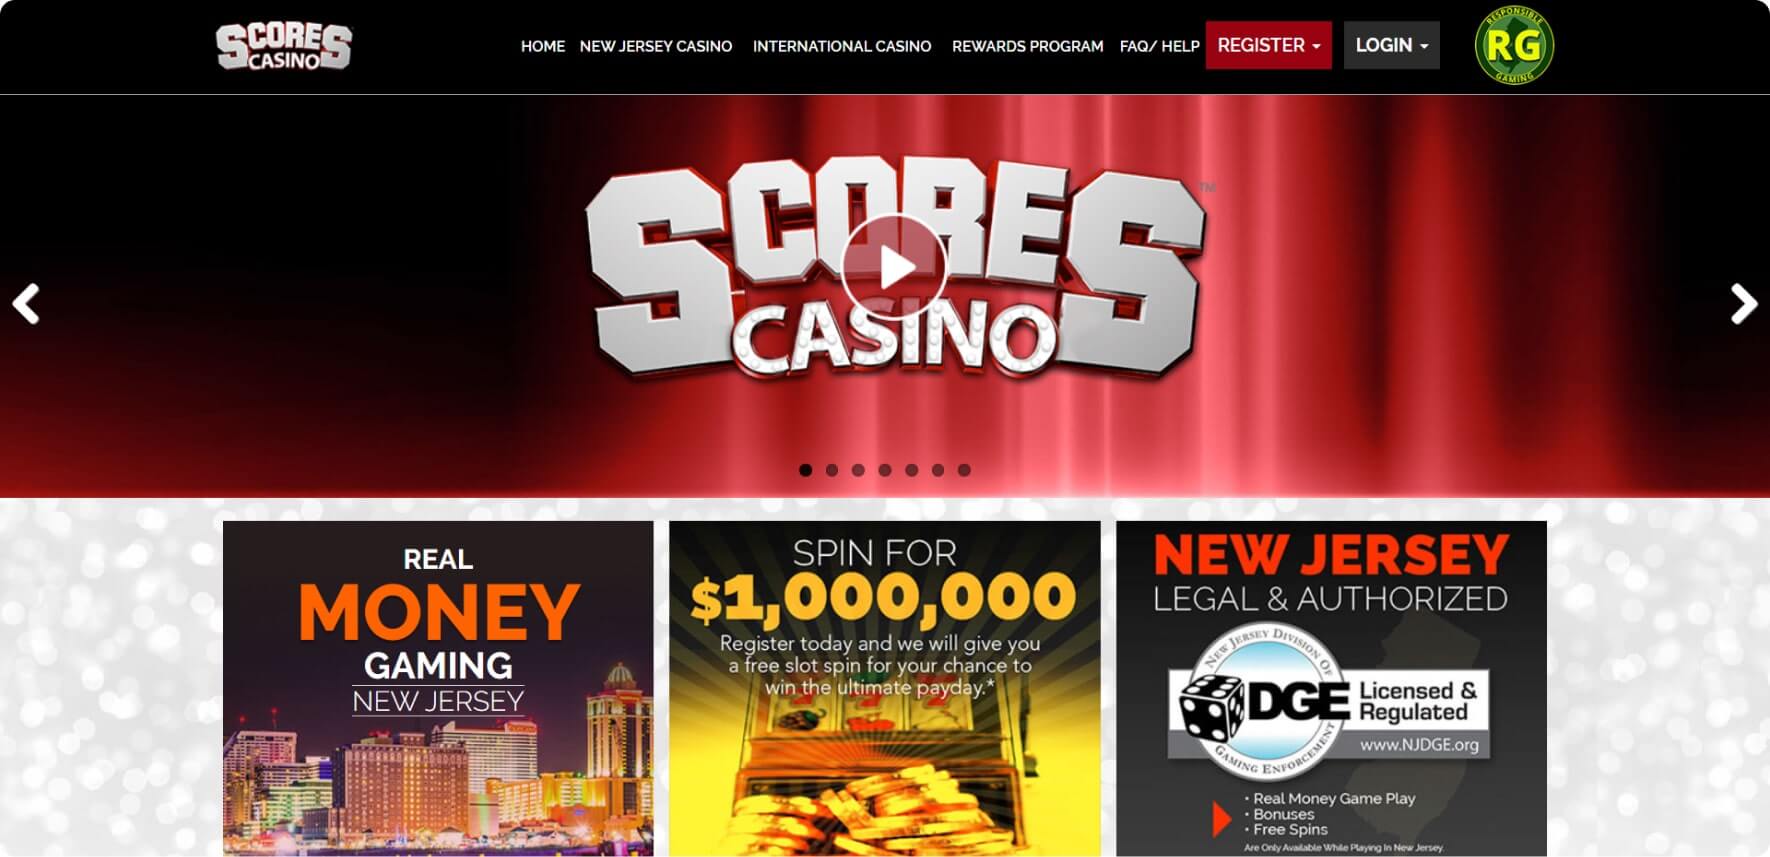 scores casino main image